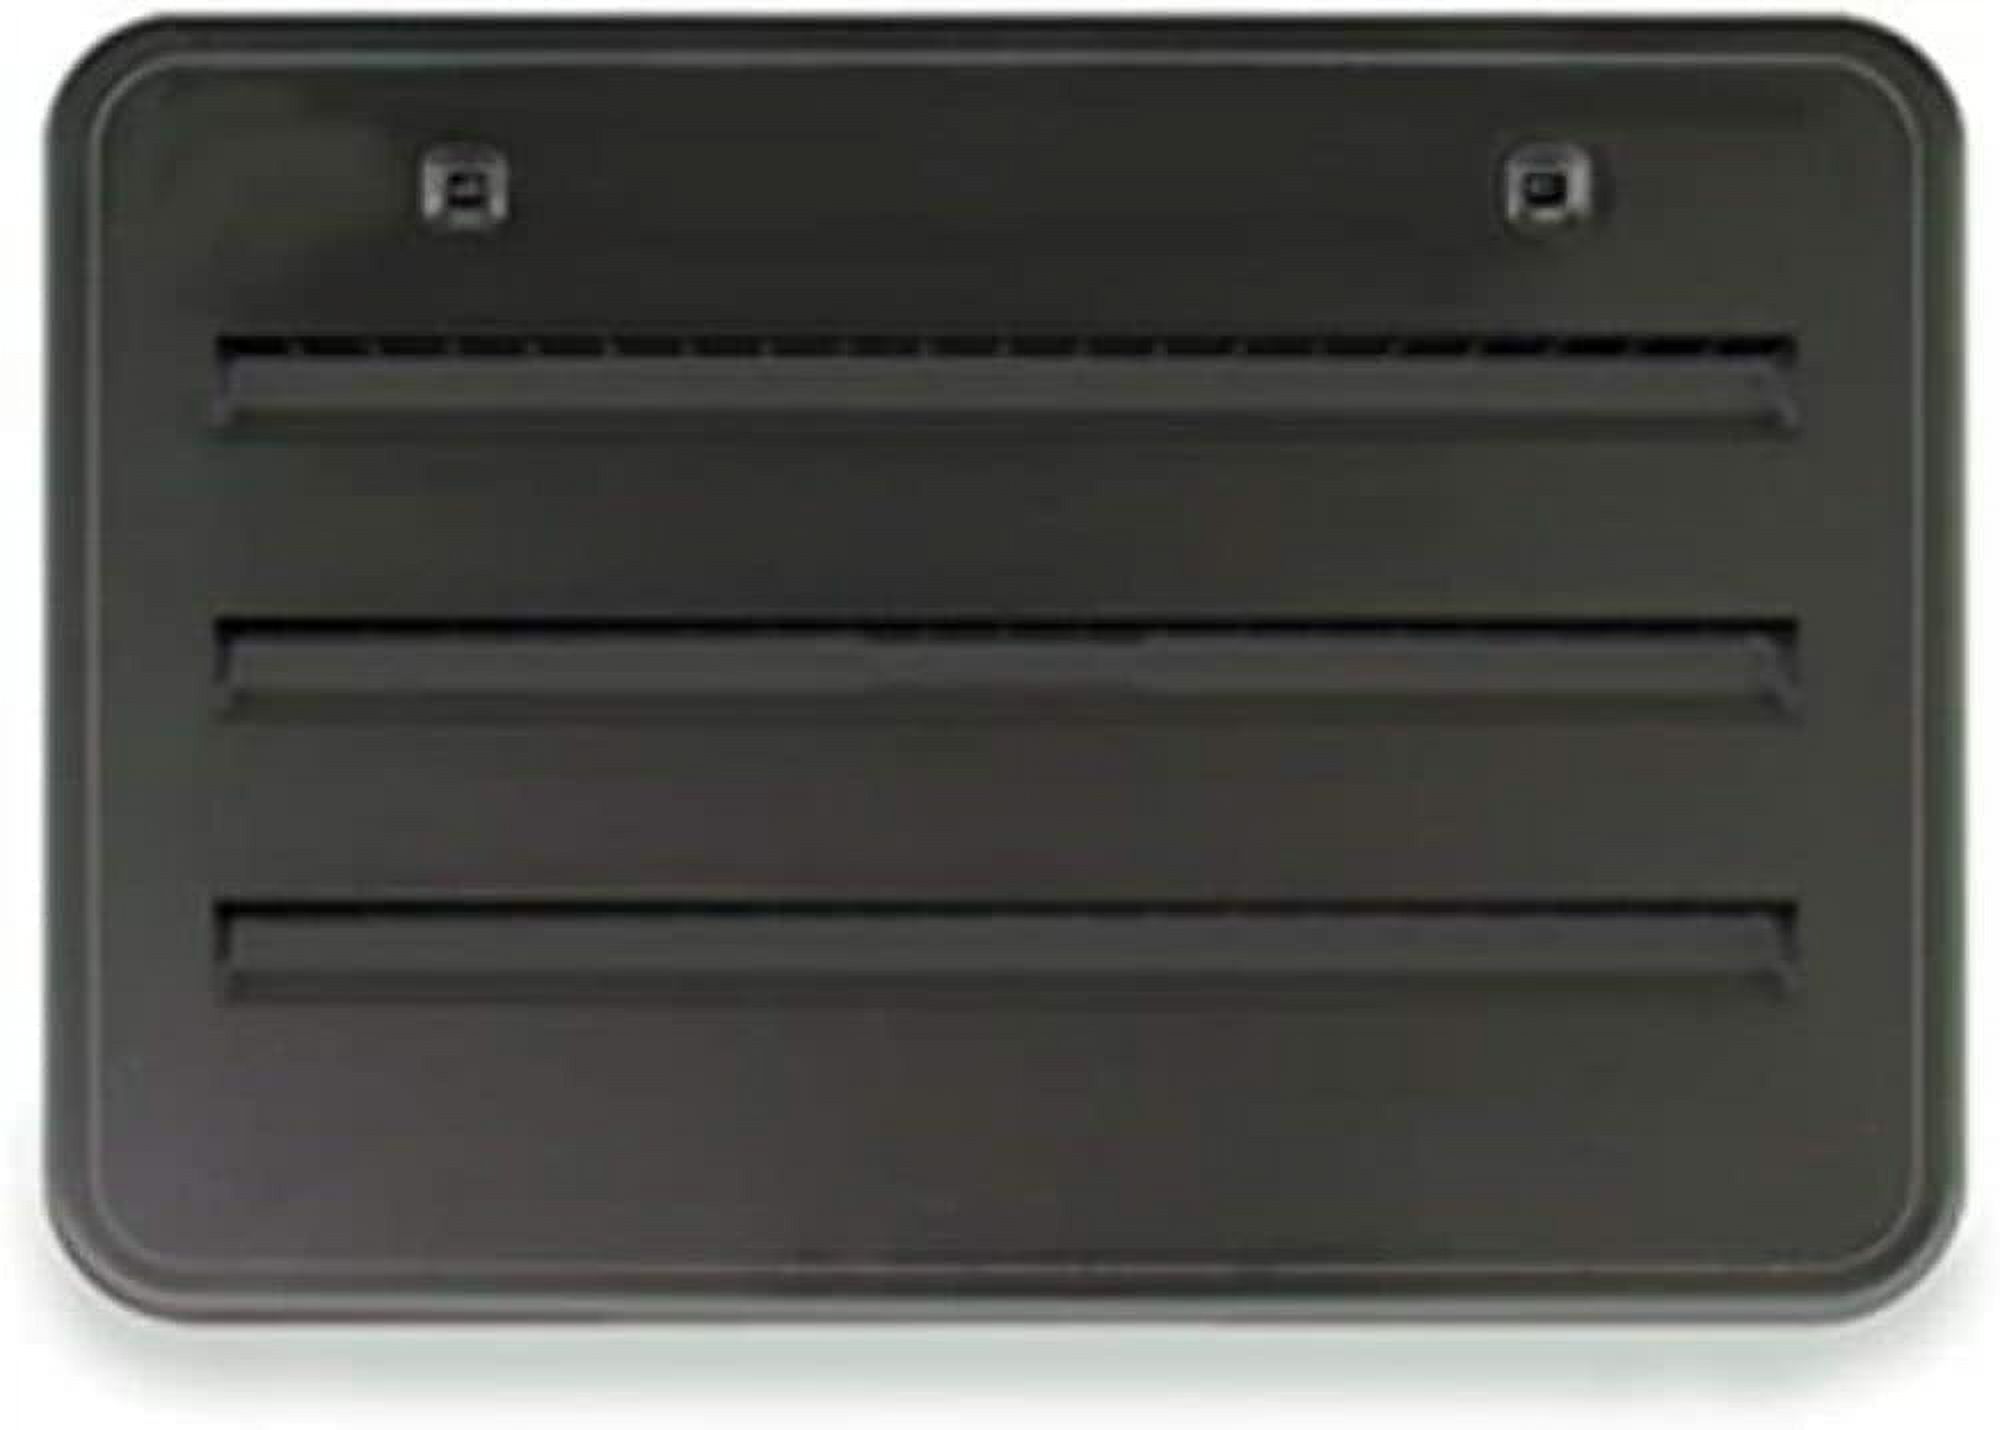 Norcold 621156bk Black Refrigerator Side Vent - image 3 of 3